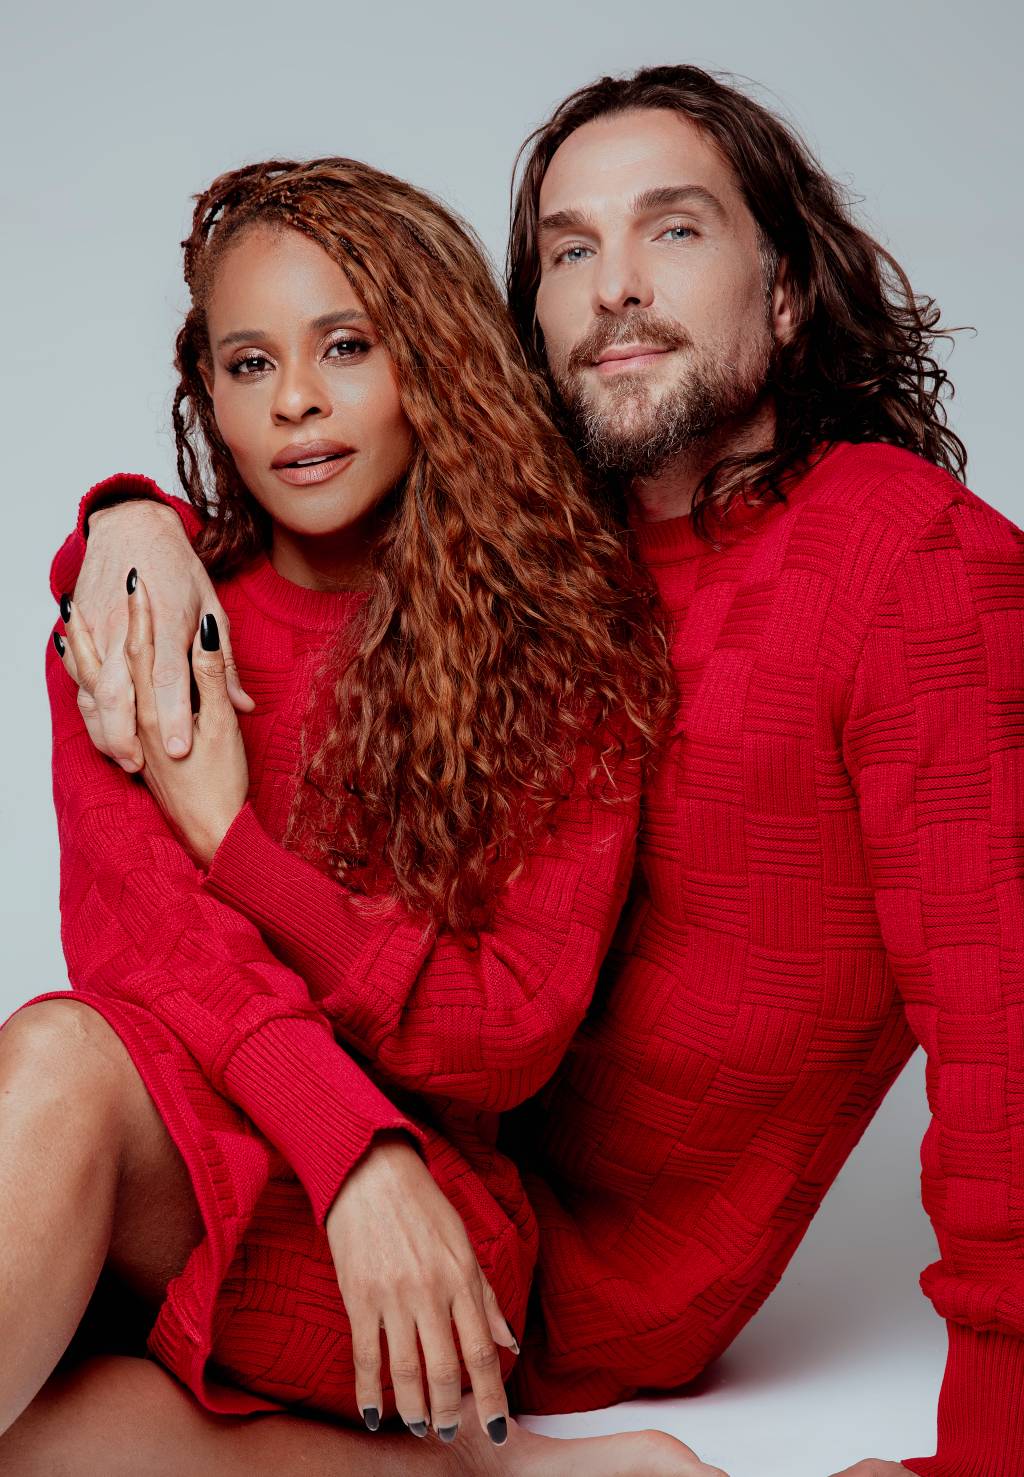 Mulher negra e homem branco, ambos de cabelos longos, posam sentados lado a lado, ele com o braço no ombro dela. Ambos vestem suéter vermelho